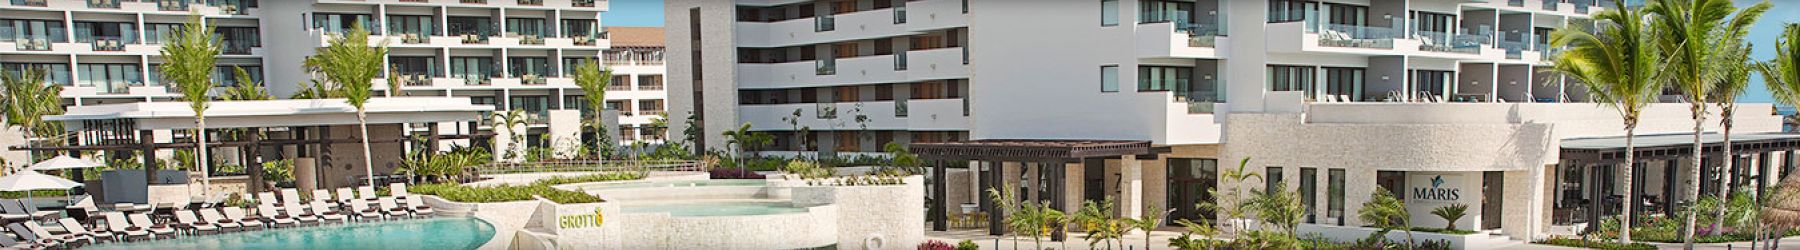 Dreams Playa Mujeres Golf & Spa Hotel